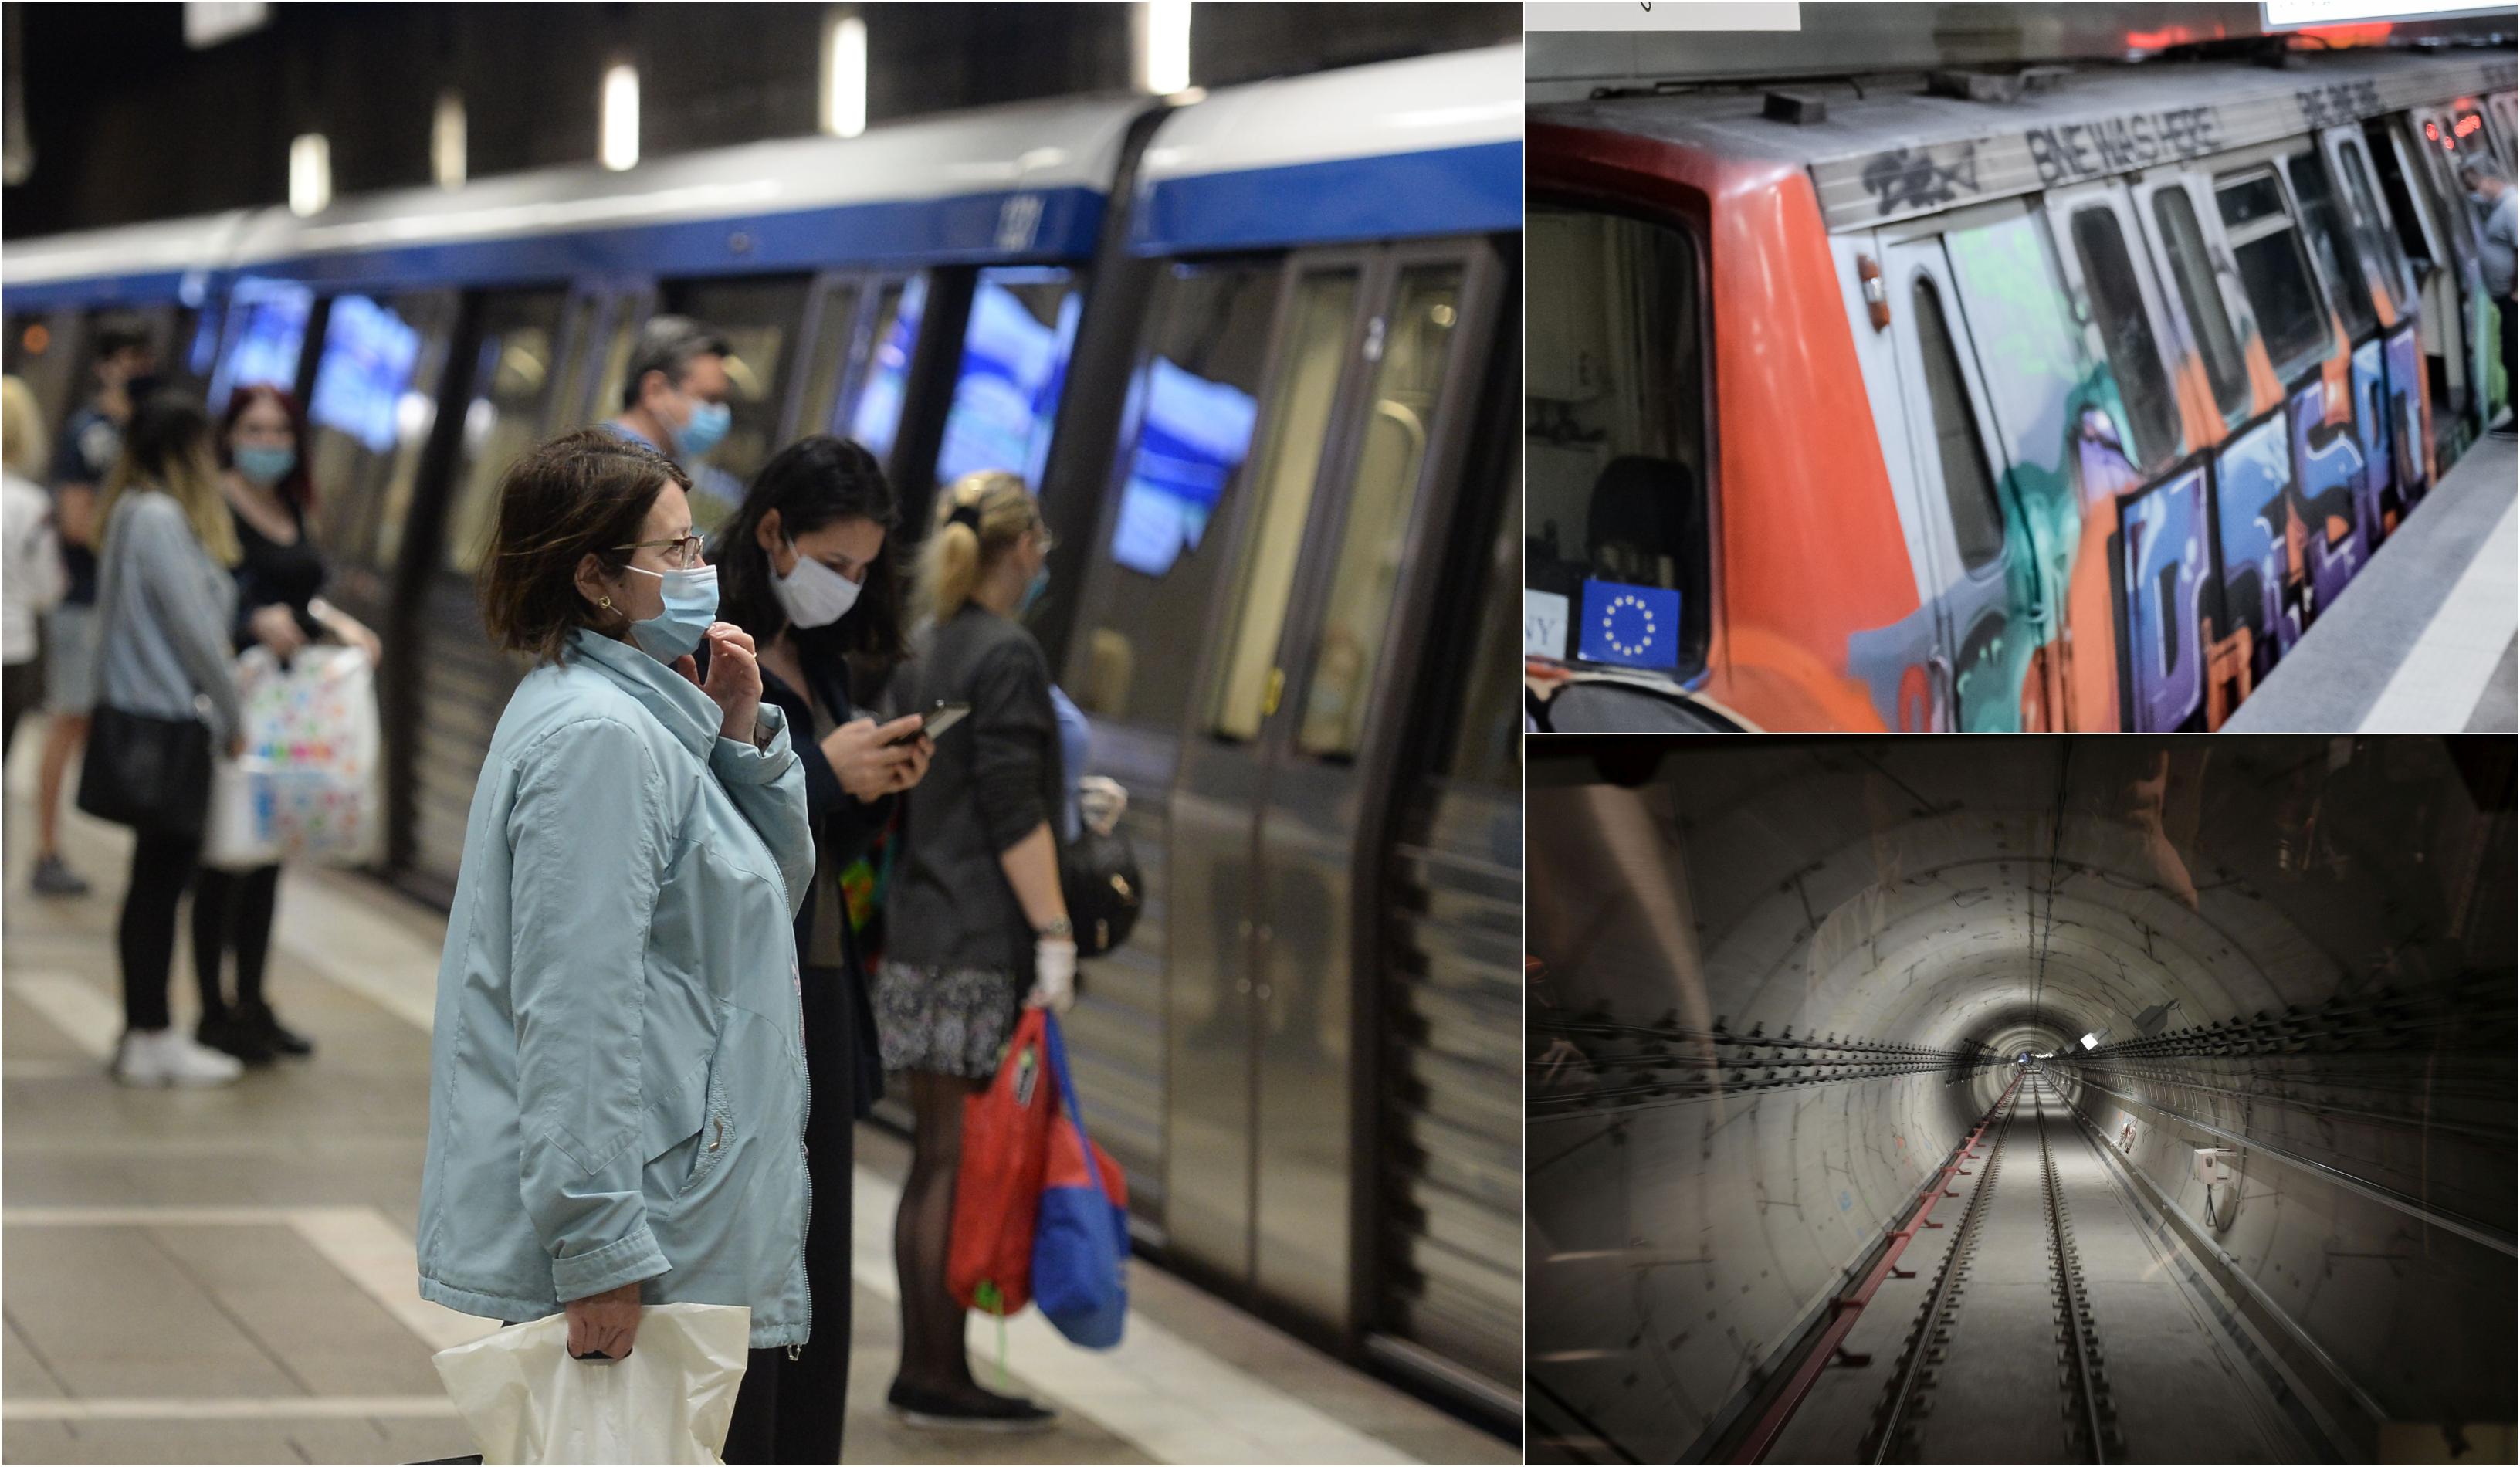 Panică la staţia de metrou Basarab. Călătorii au fost evacuaţi prin tunel, după ce o garnitură s-a oprit. Precizările Metrorex